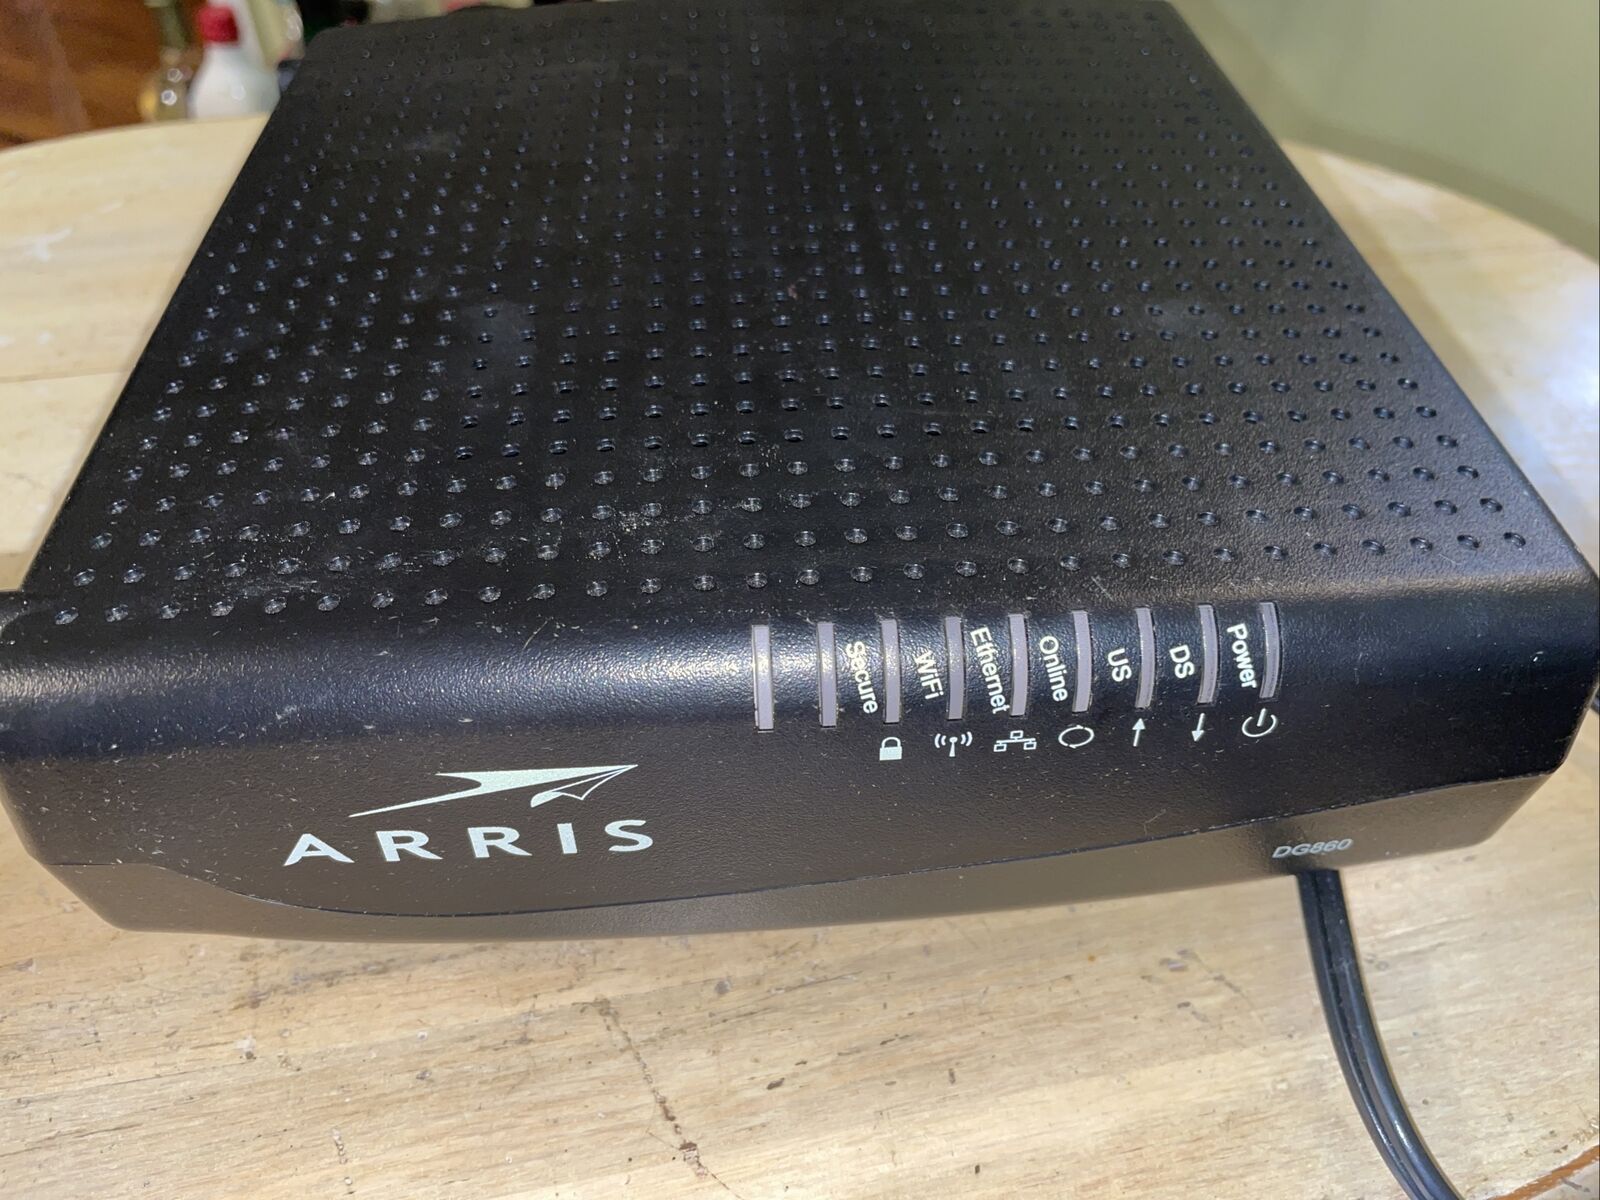 Arris DG860A wireless cable modem